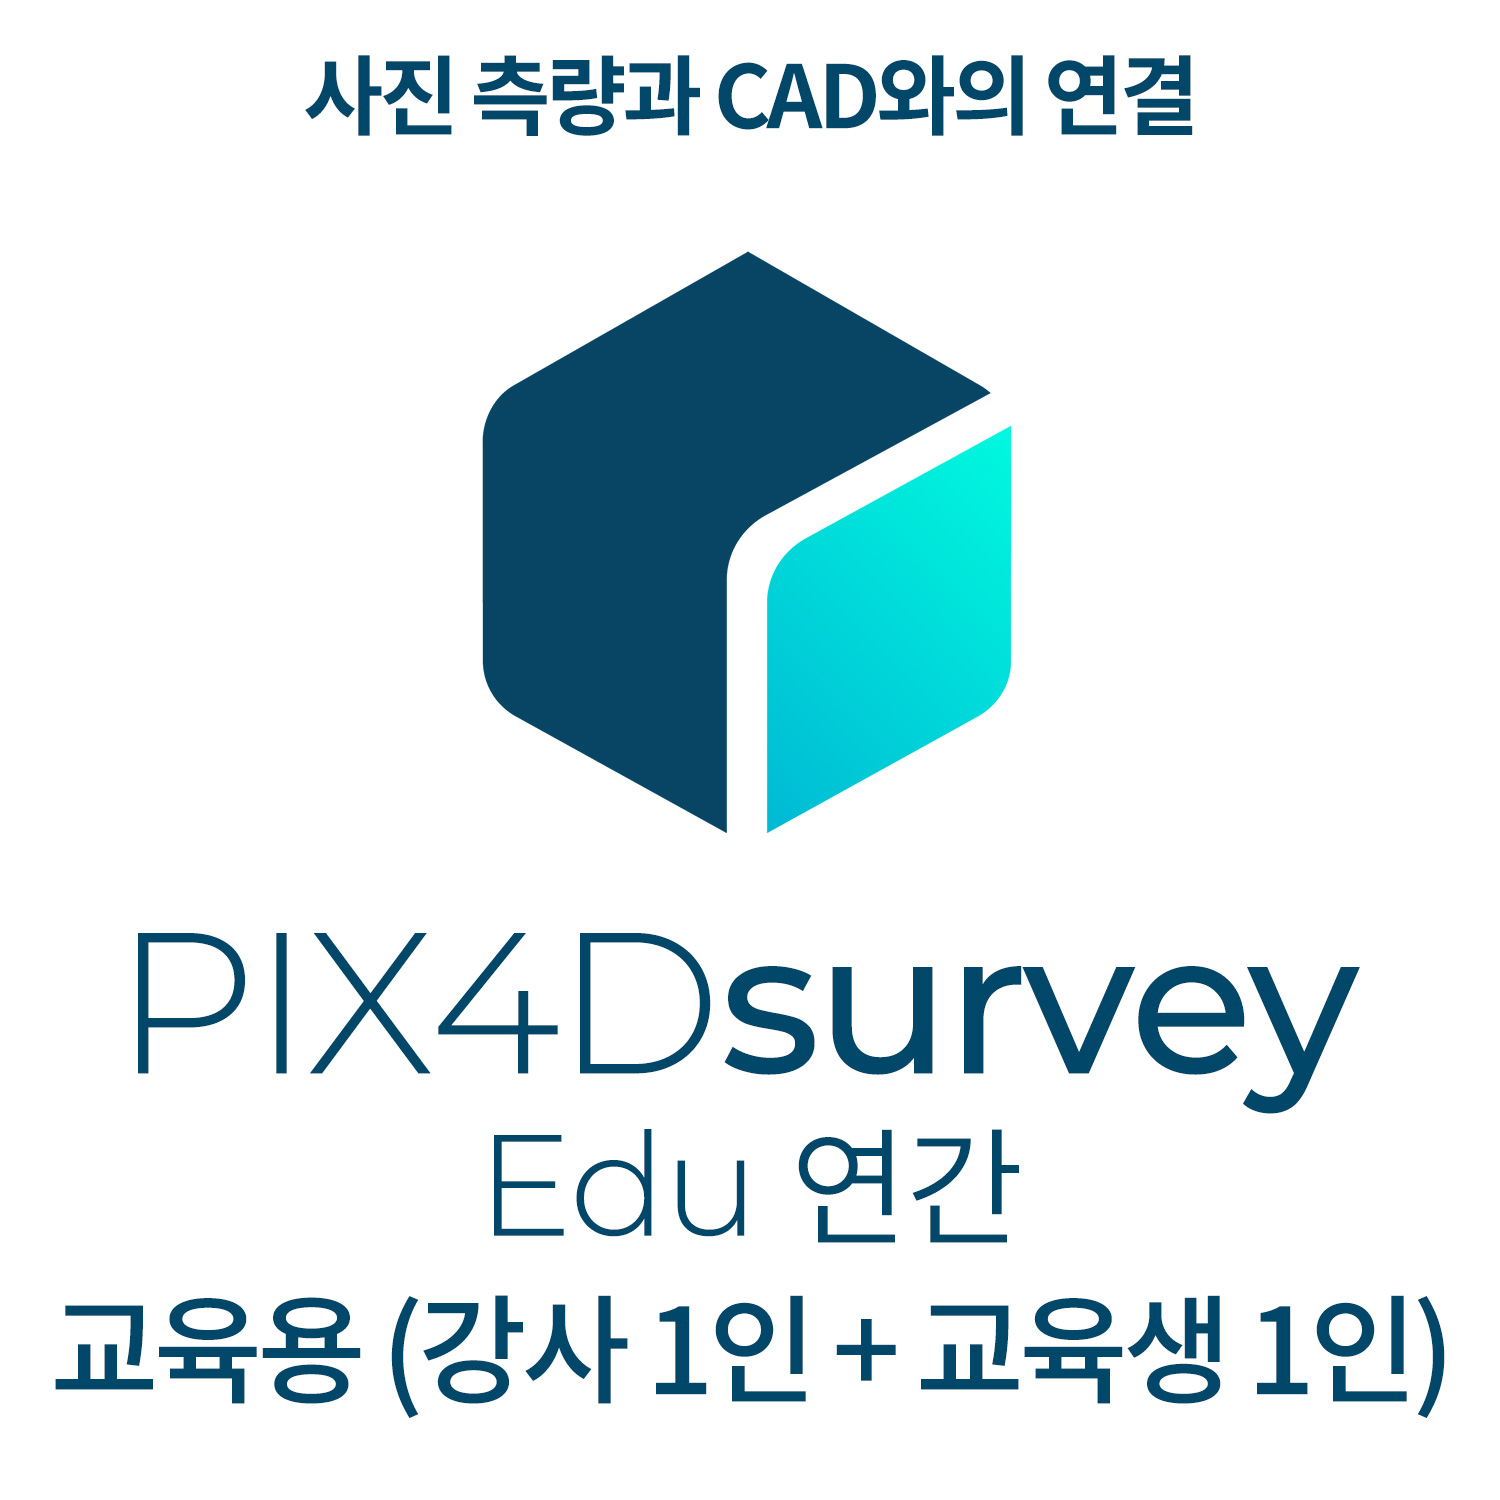 PIX4Dsurvey EDU교육기관-학교(강사 1인 + 교육생 1인)(연간이용) 헬셀